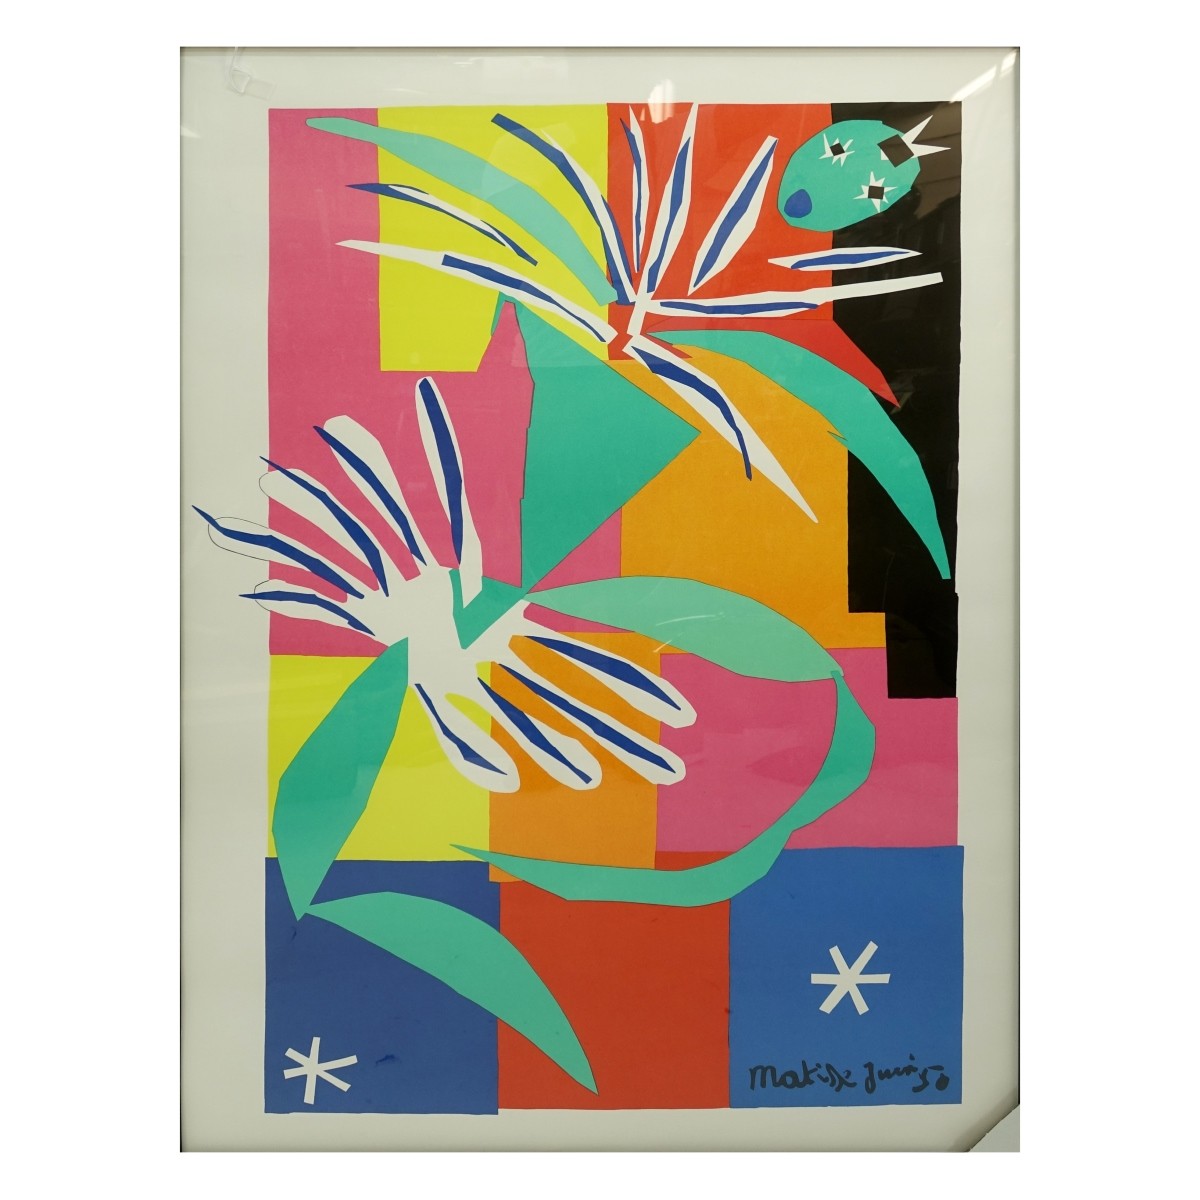 After: Henri Matisse (1869 - 1954) "Creole Dancer"